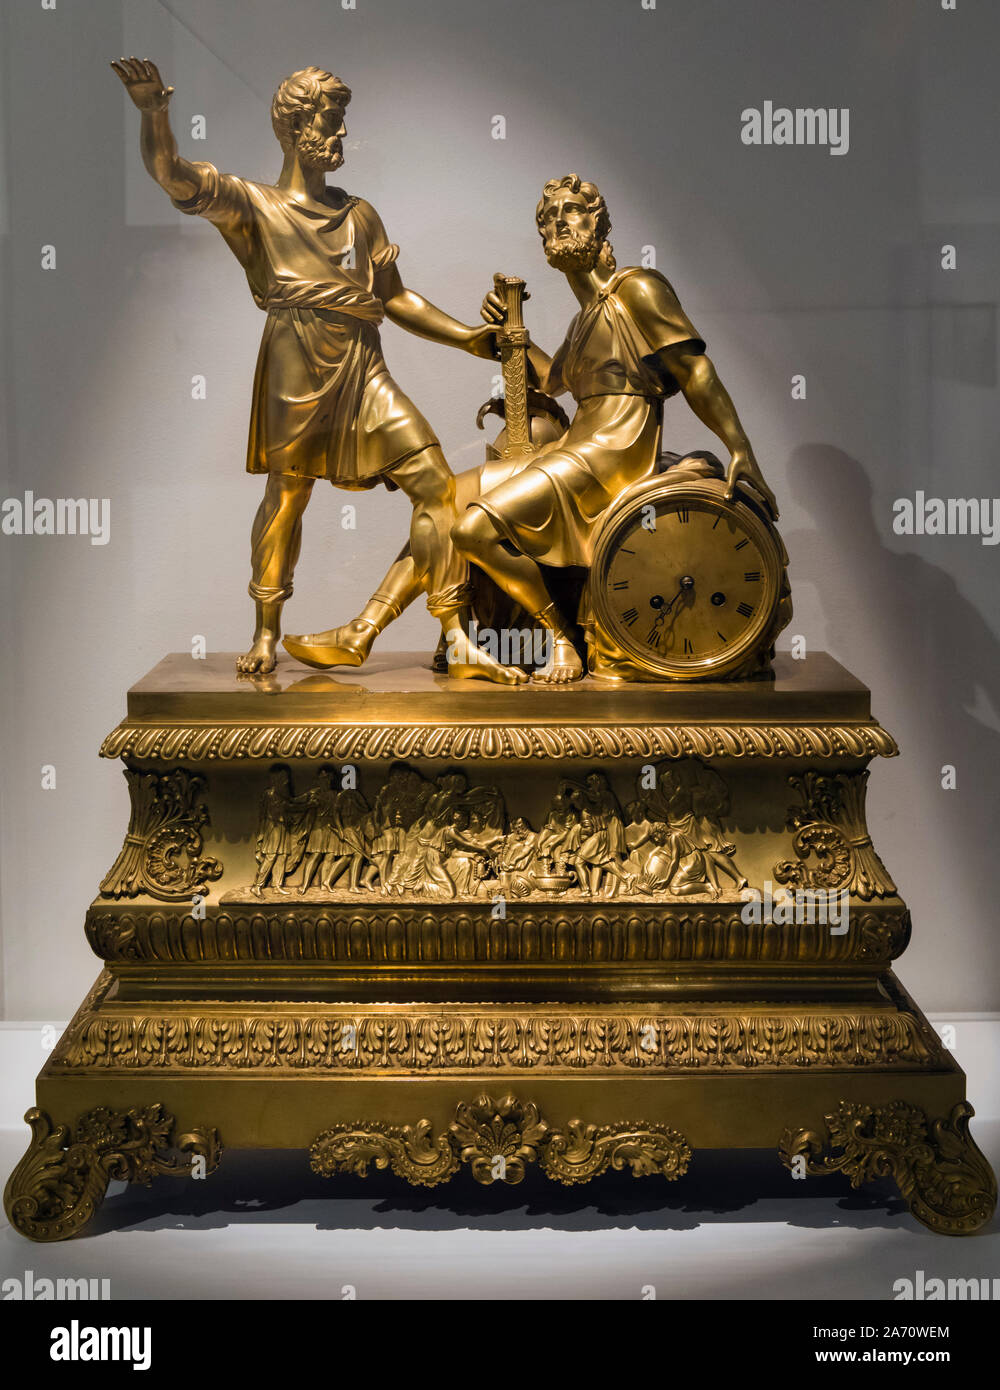 Horloge en bronze à partir de la première moitié du 19e siècle. Par un artiste inconnu. Exposé dans la direction de Malaga du Musée d'Etat russe. Colección d Banque D'Images